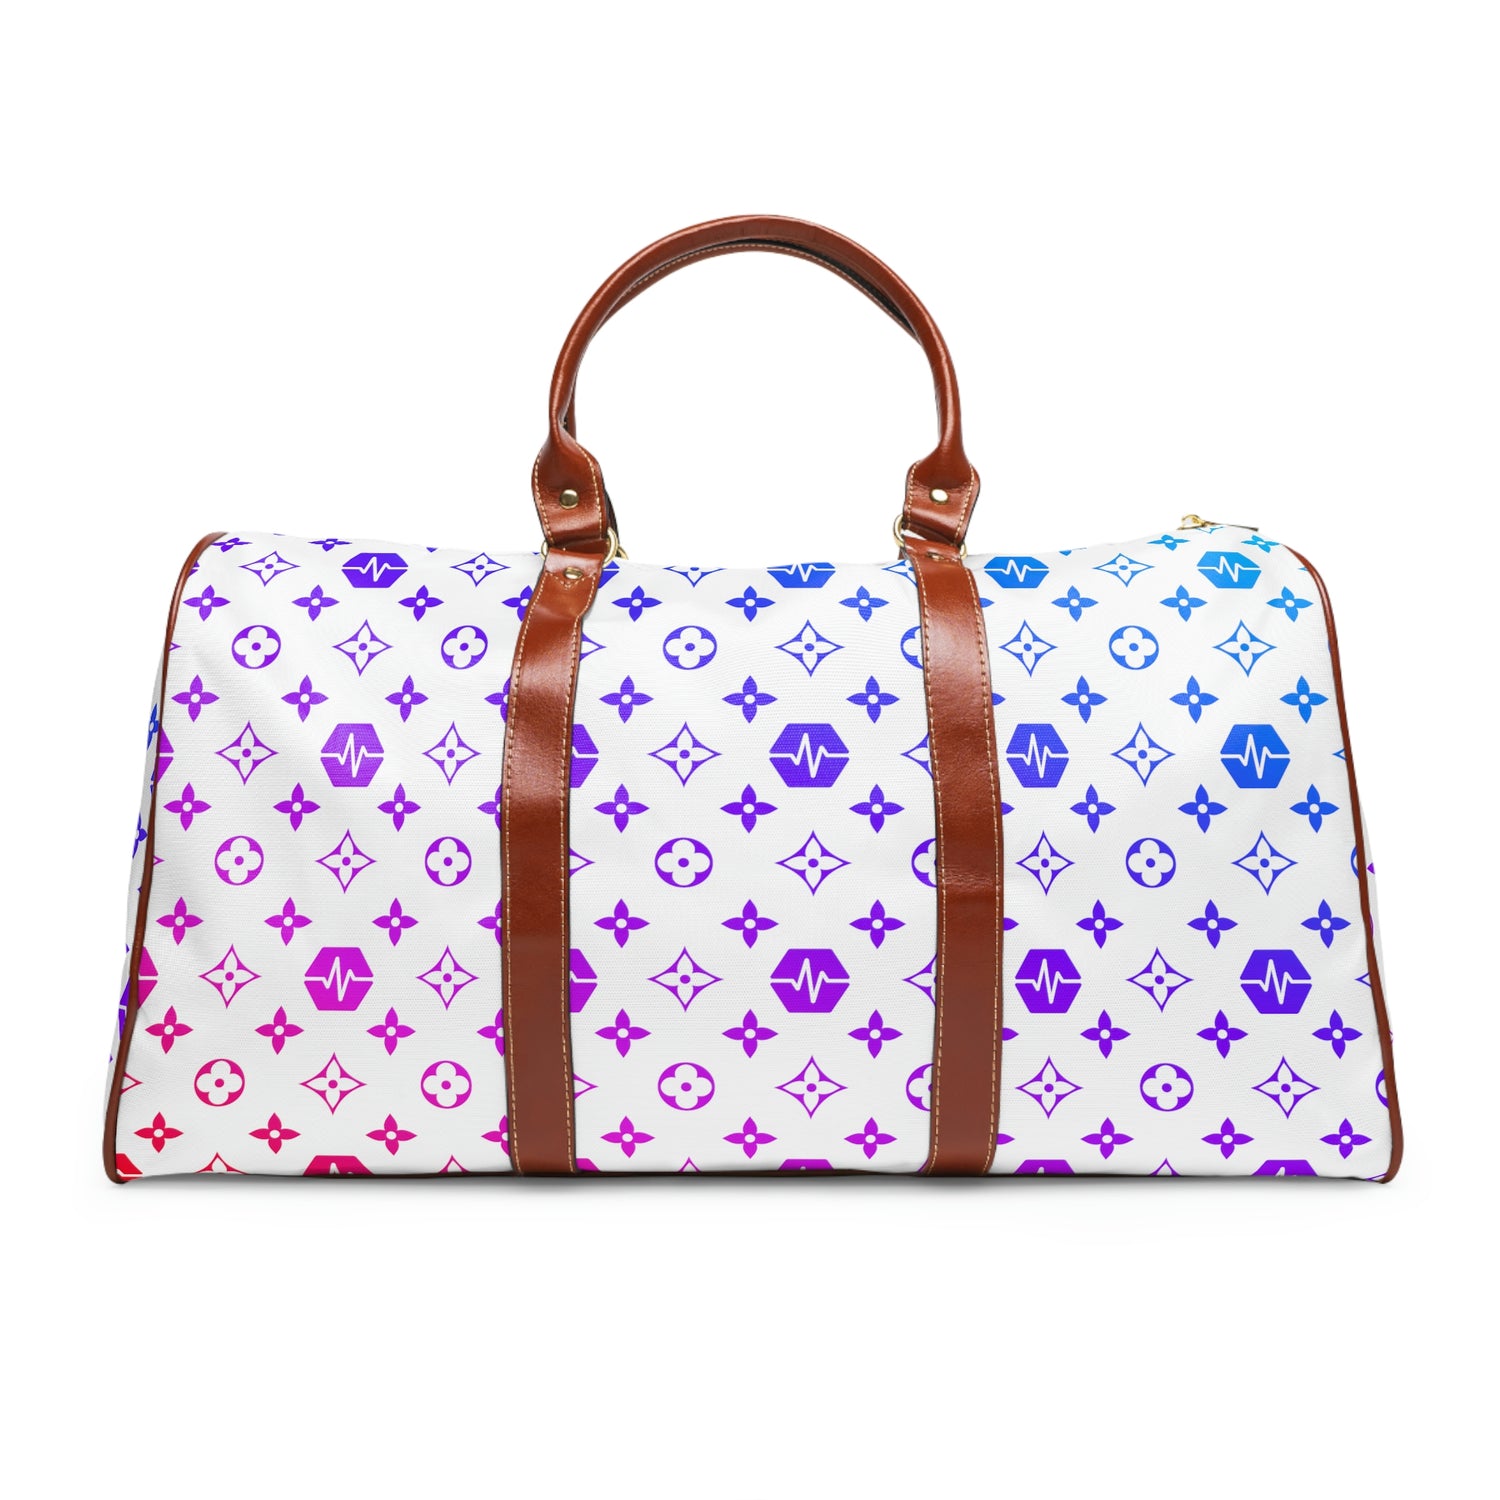 Louis Vuitton Multicolor Designer Duffle Bag, For Travel